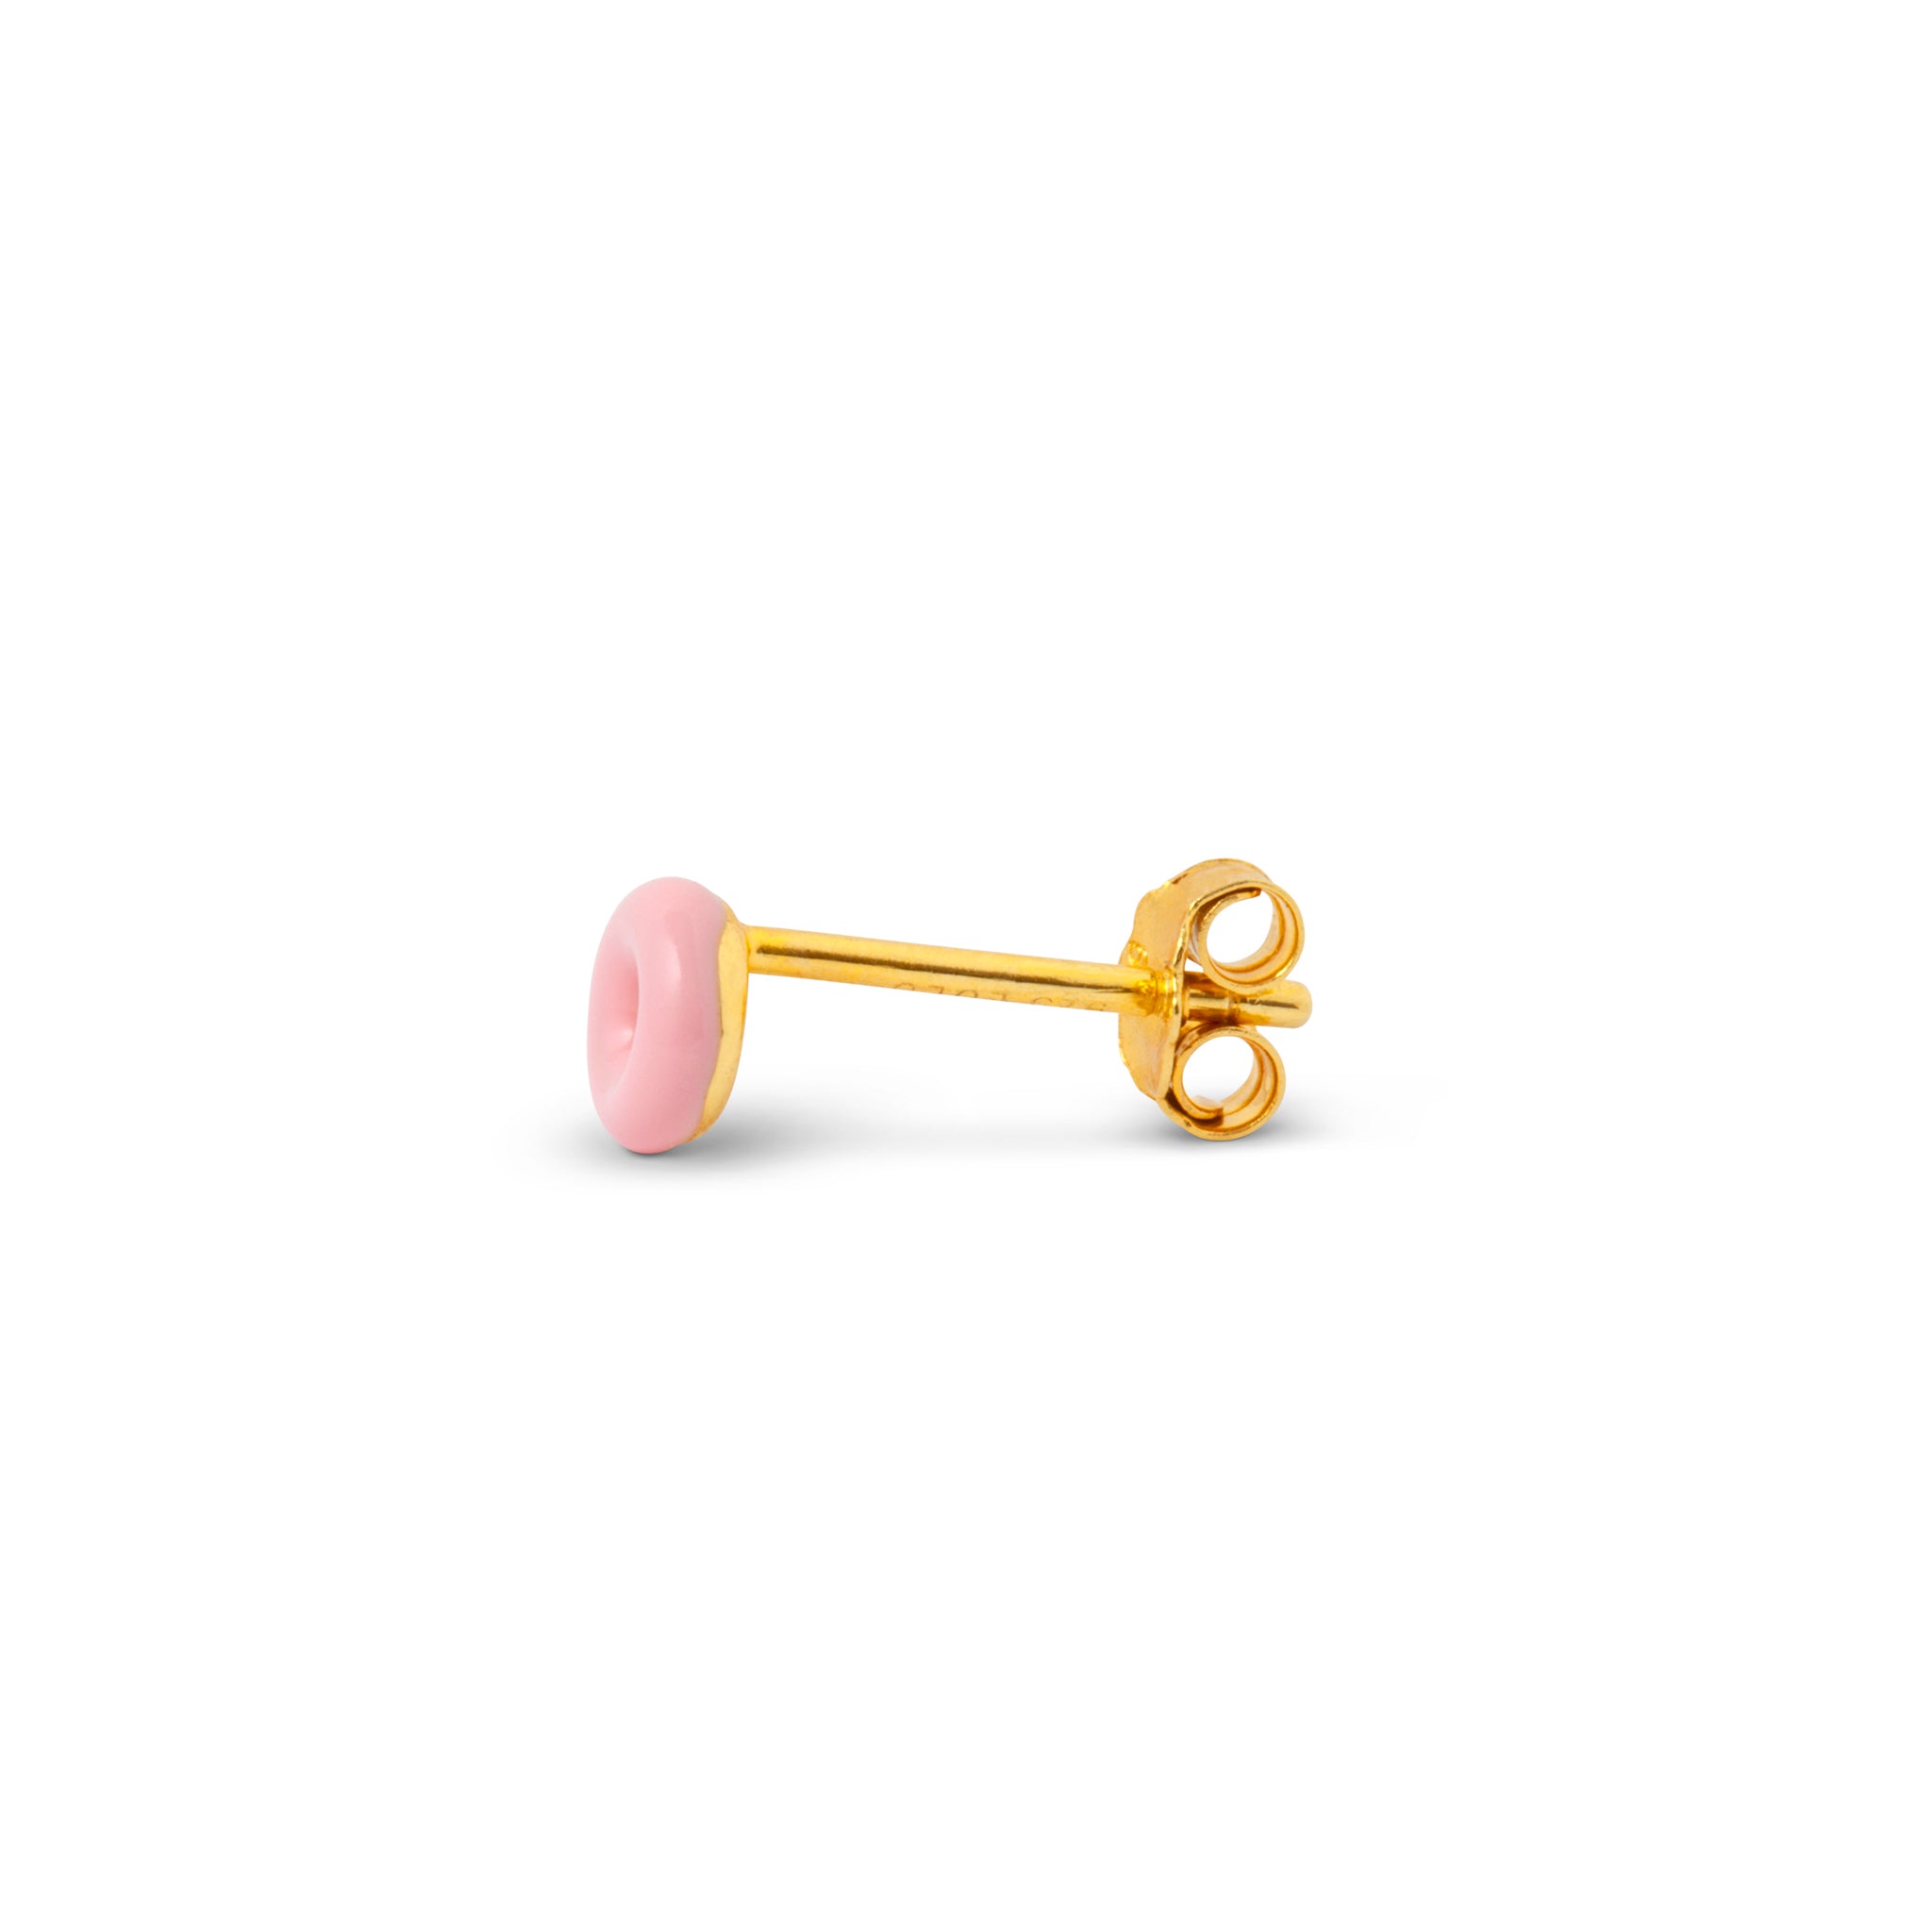 A Lulu Copenhagen Donut Single Stud - Light Pink earring in baby pink on a white background.